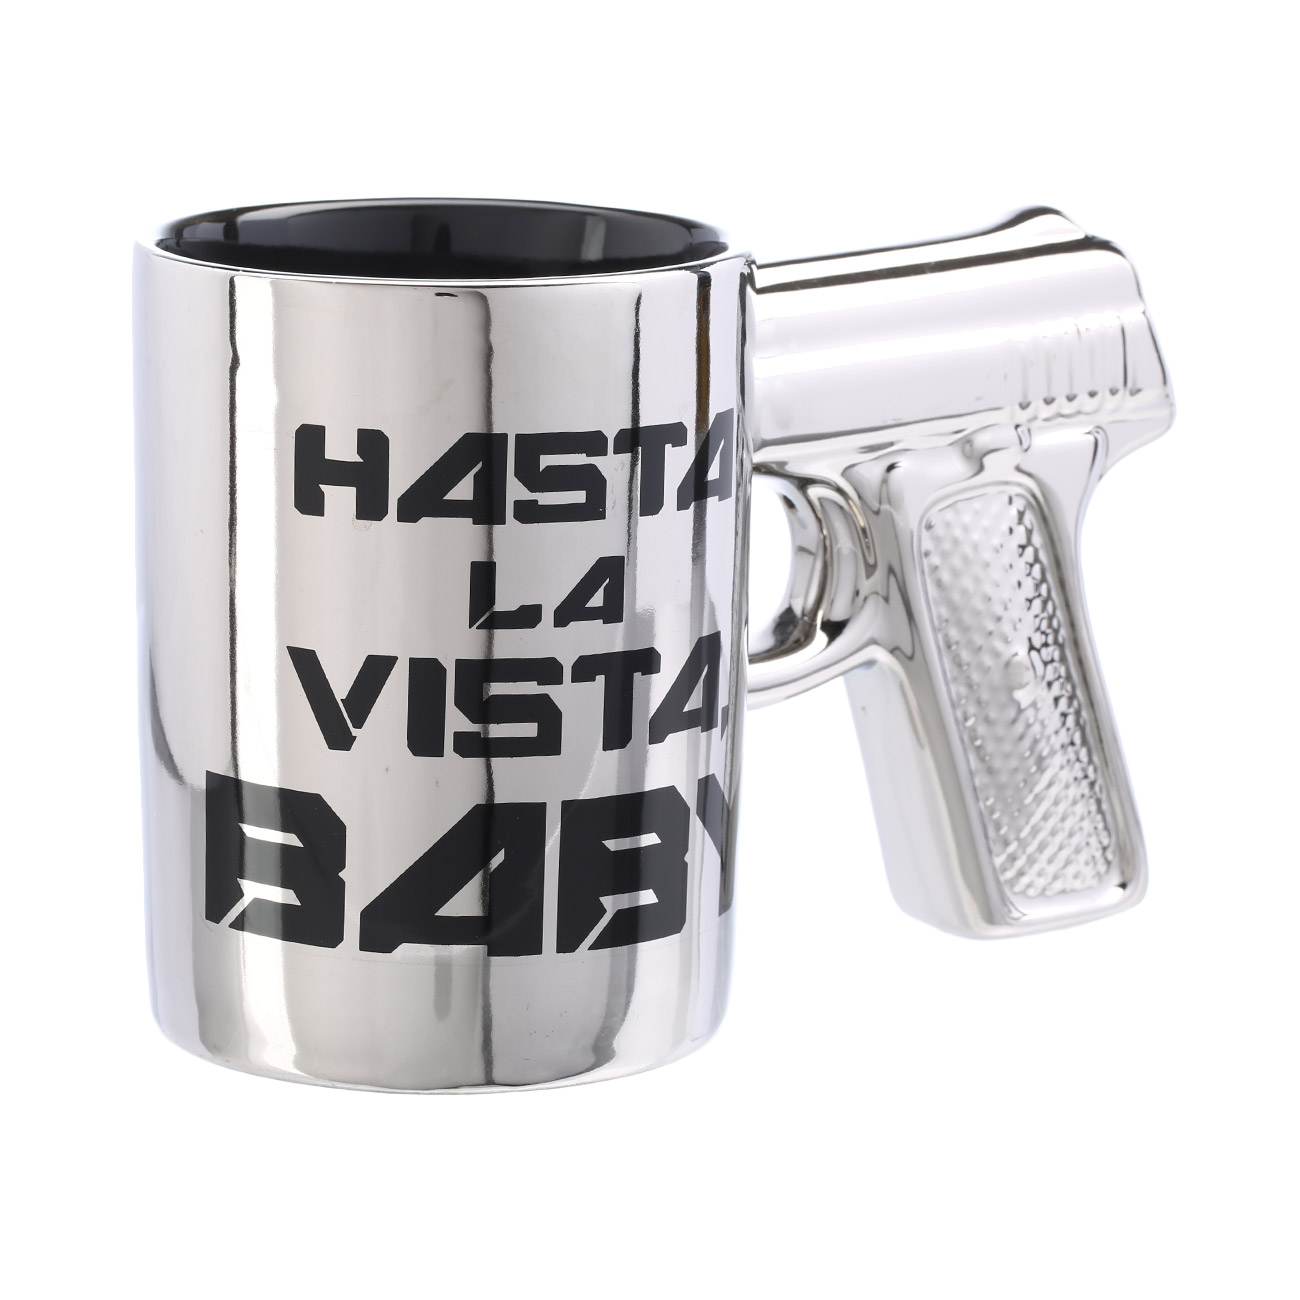 Hasta La Vista Baby - silberner Steingut-Becher mit Pistolengriff Bild 1